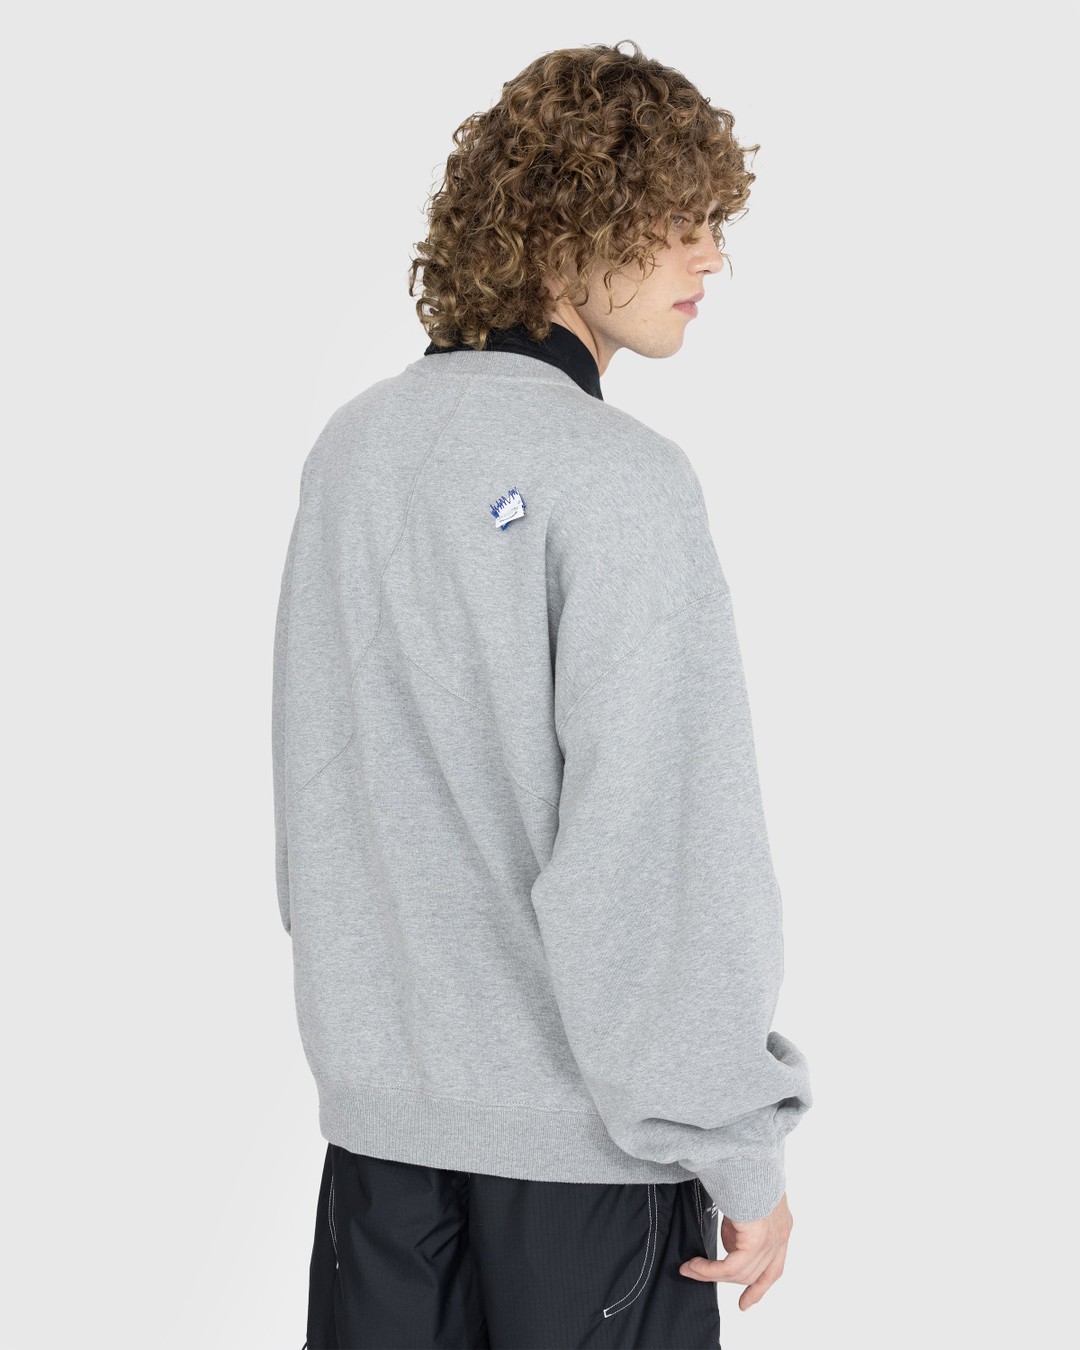 Converse x Ader Error – Shapes Crew Sweatshirt Vintage Grey Heather - Sweats - Grey - Image 3